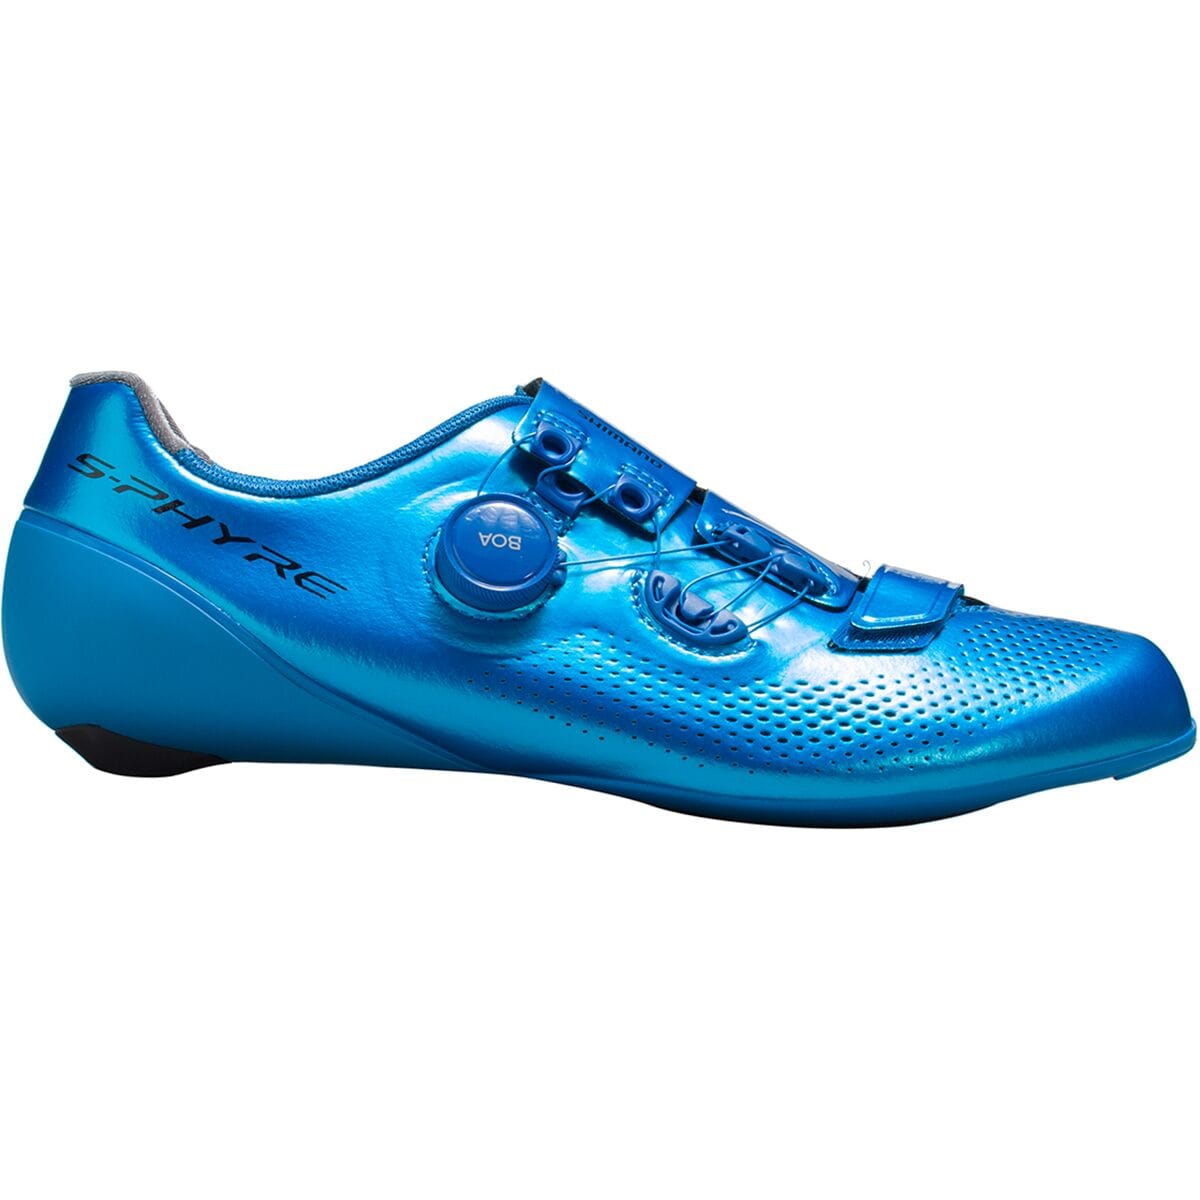 Shimano S-Phyre RC9T Cycling Shoe - Men's - Men